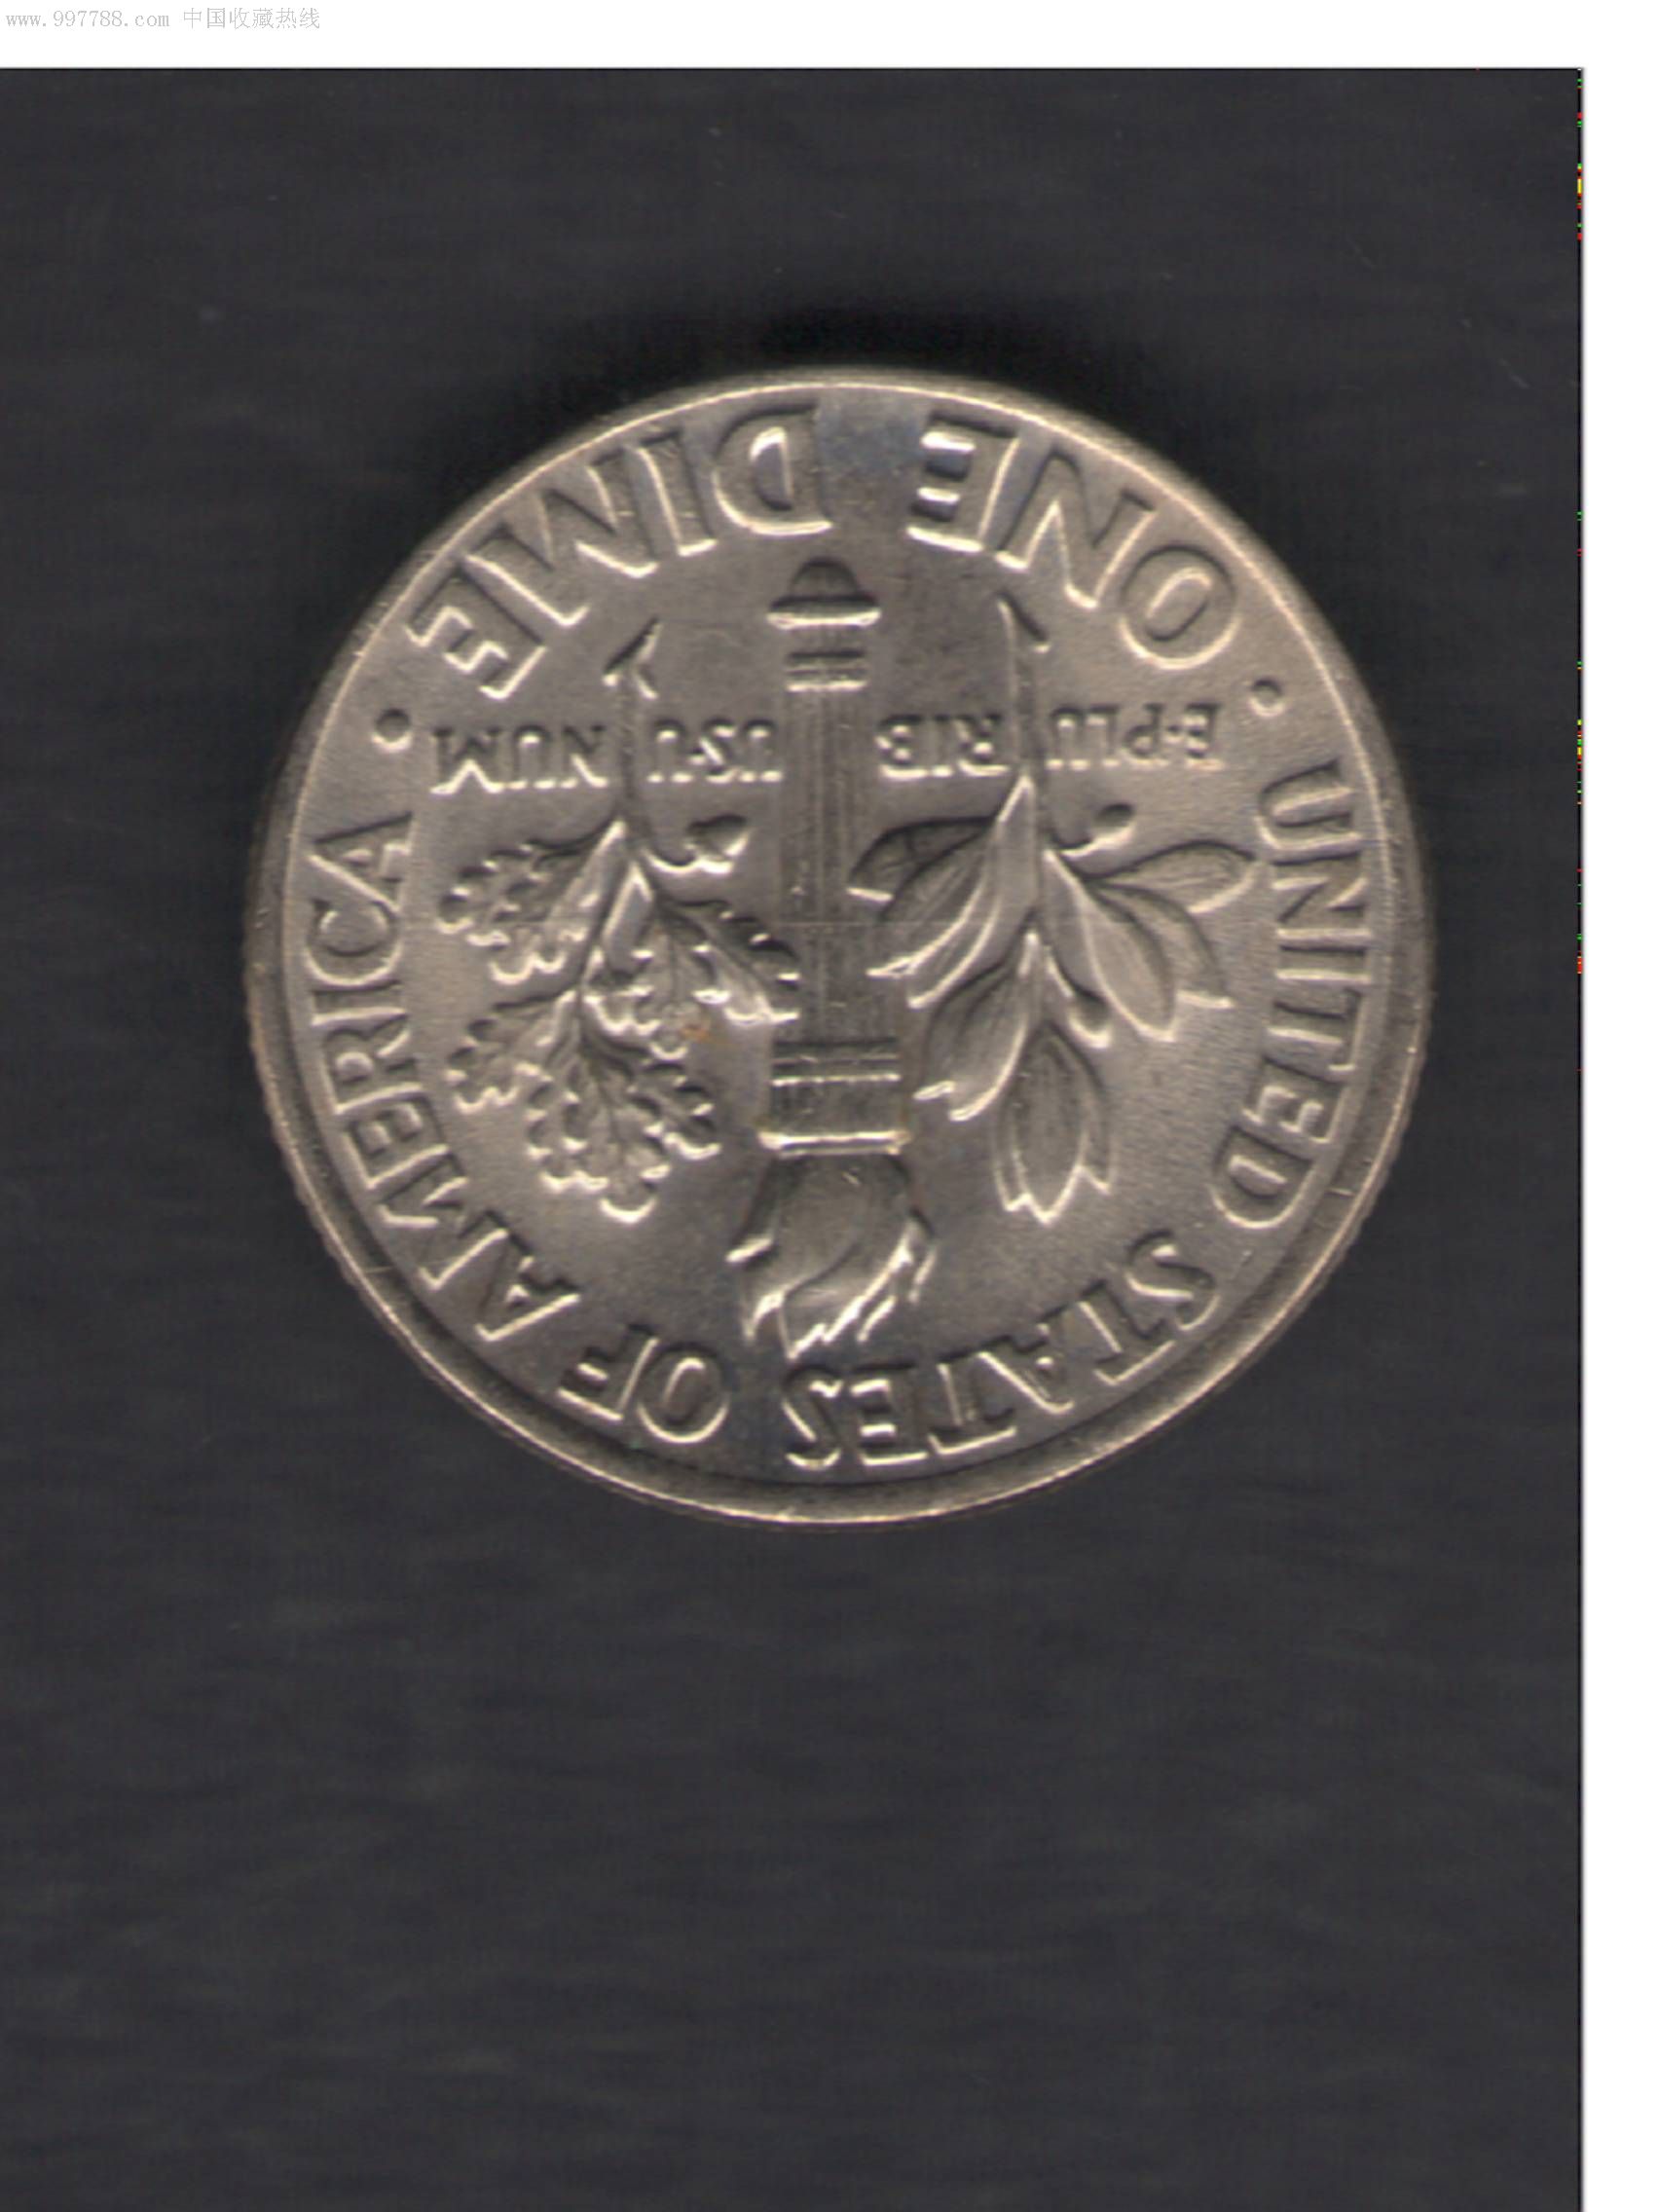 2001年10美分流通硬币